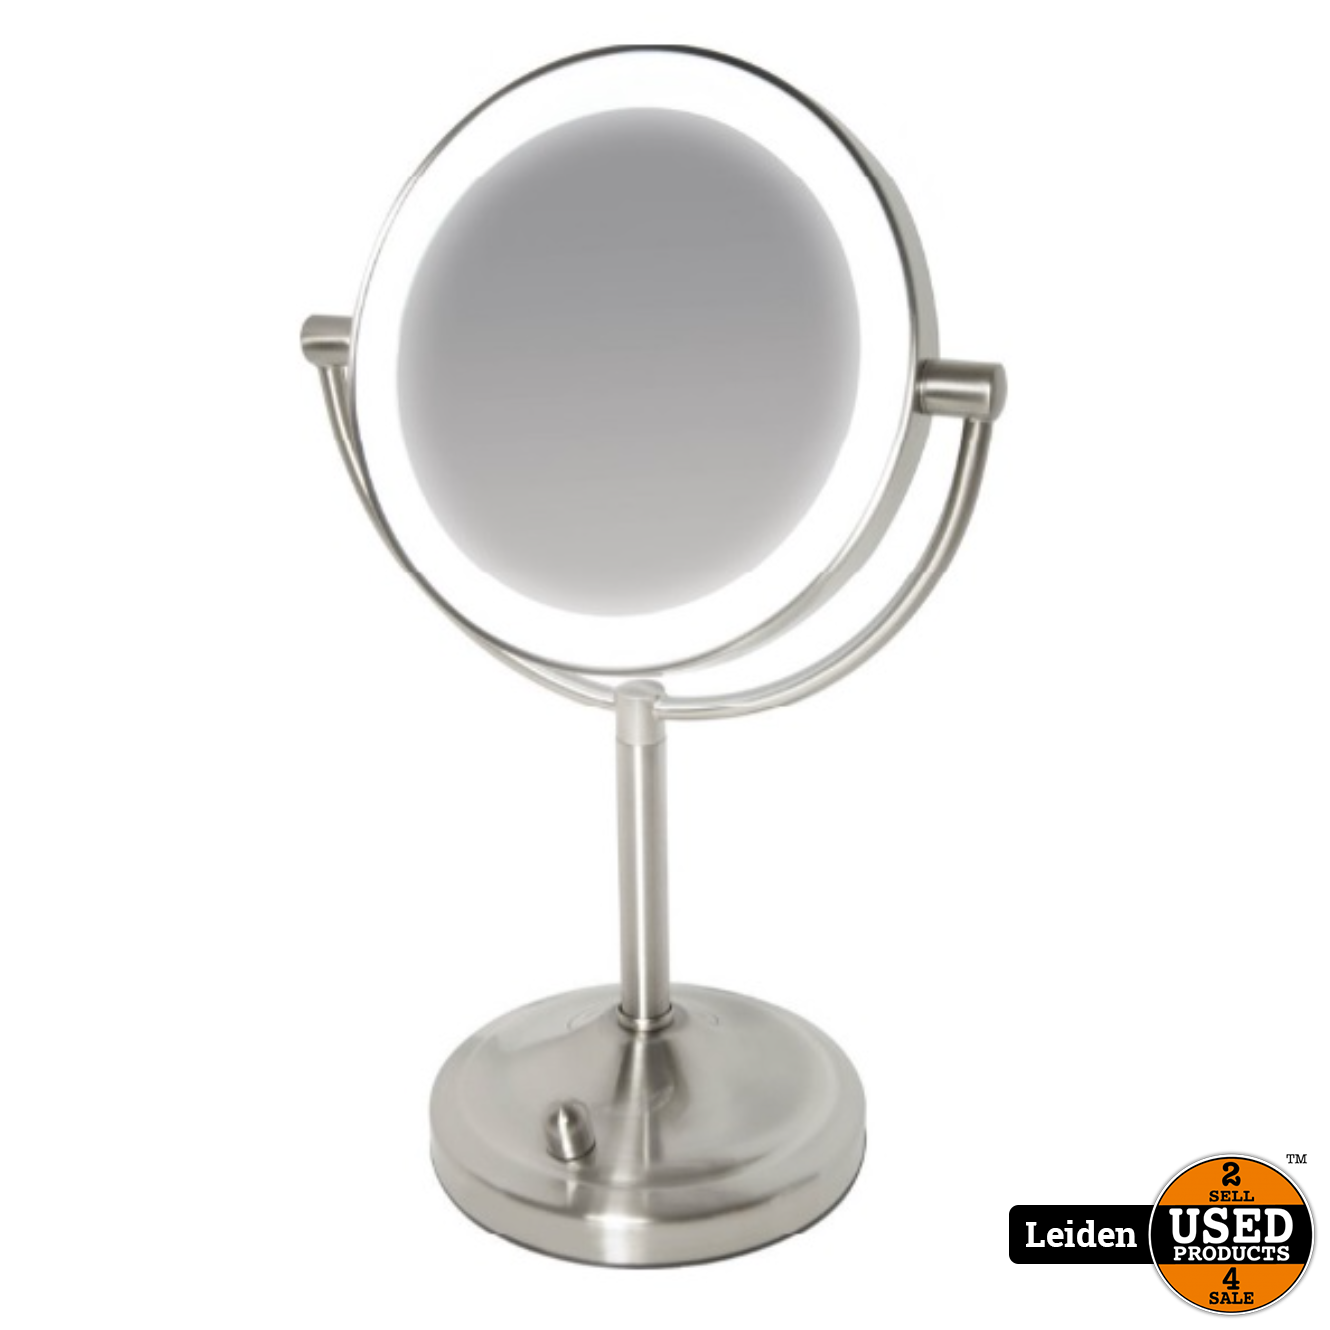 Vertrek Vijandig gallon HoMedics MIR8150 Dubbelzijdige Make Up Spiegel met Verlichting - Vrijstaand  - 7x vergroting - spiegel met ringverlichting (NIEUW uit doos) - Used  Products Leiden